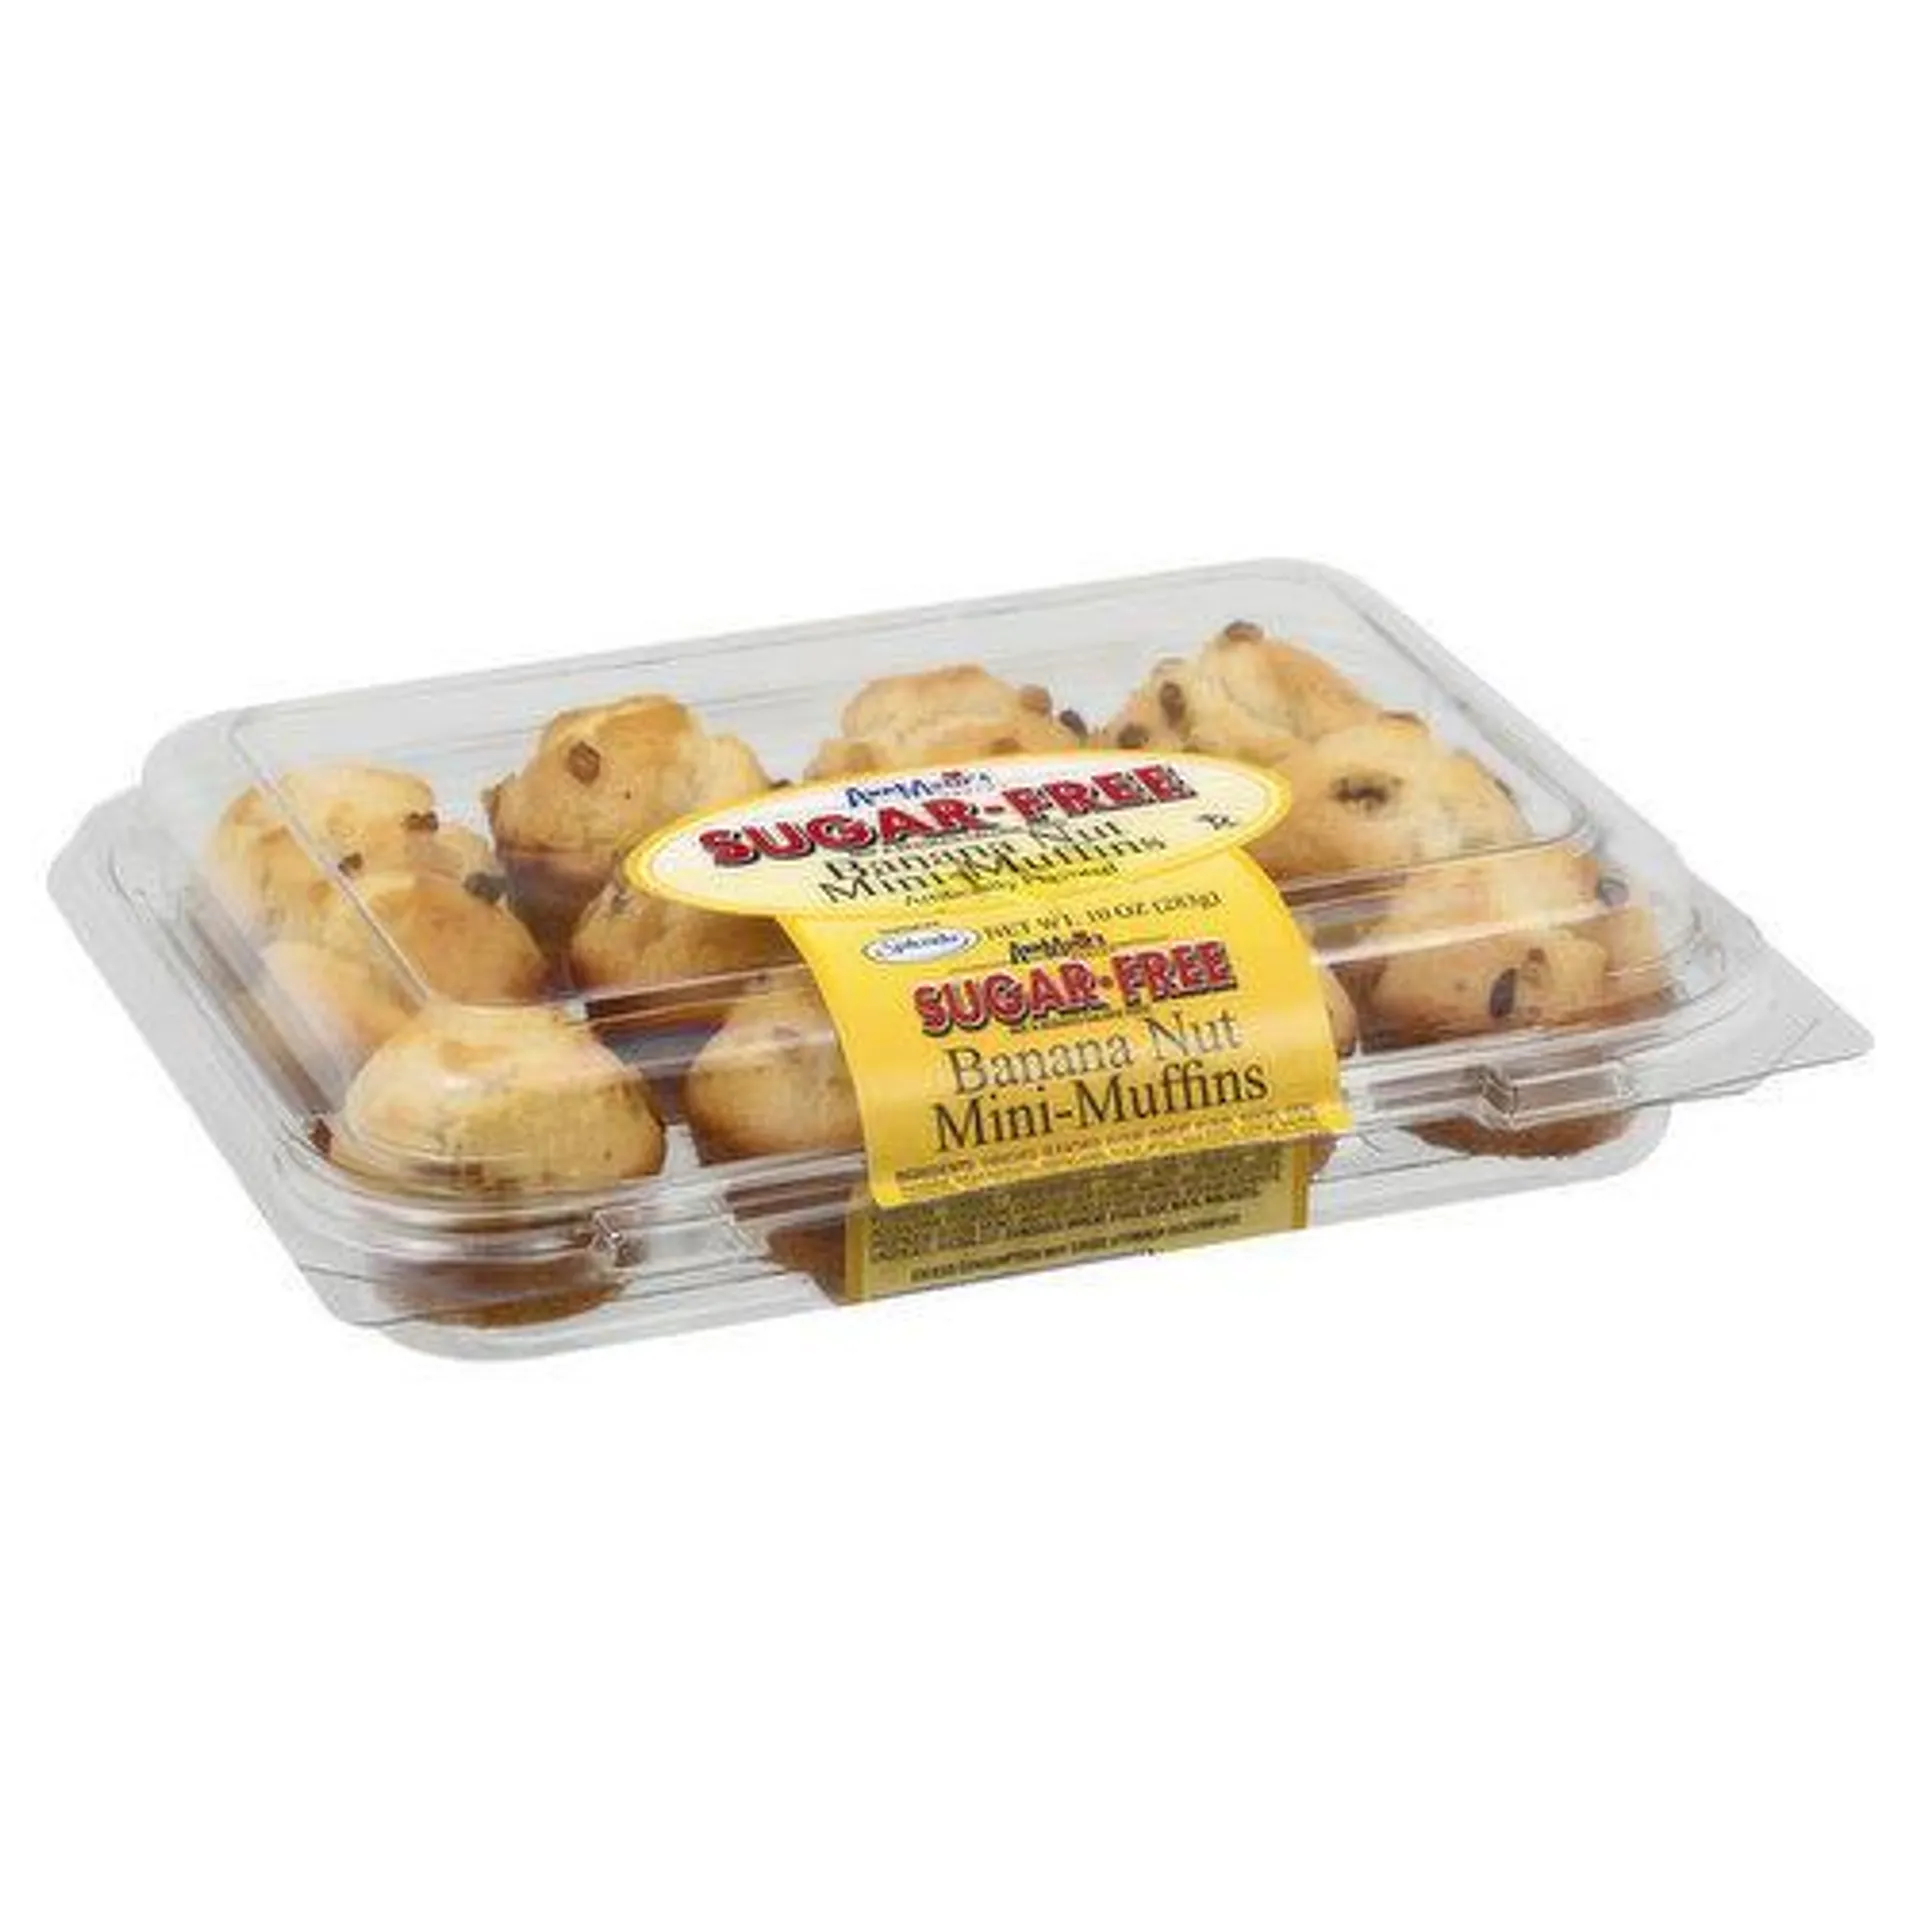 Ann Maries Mini-Muffins, Sugar Free, Banana Nut - 10 Ounce